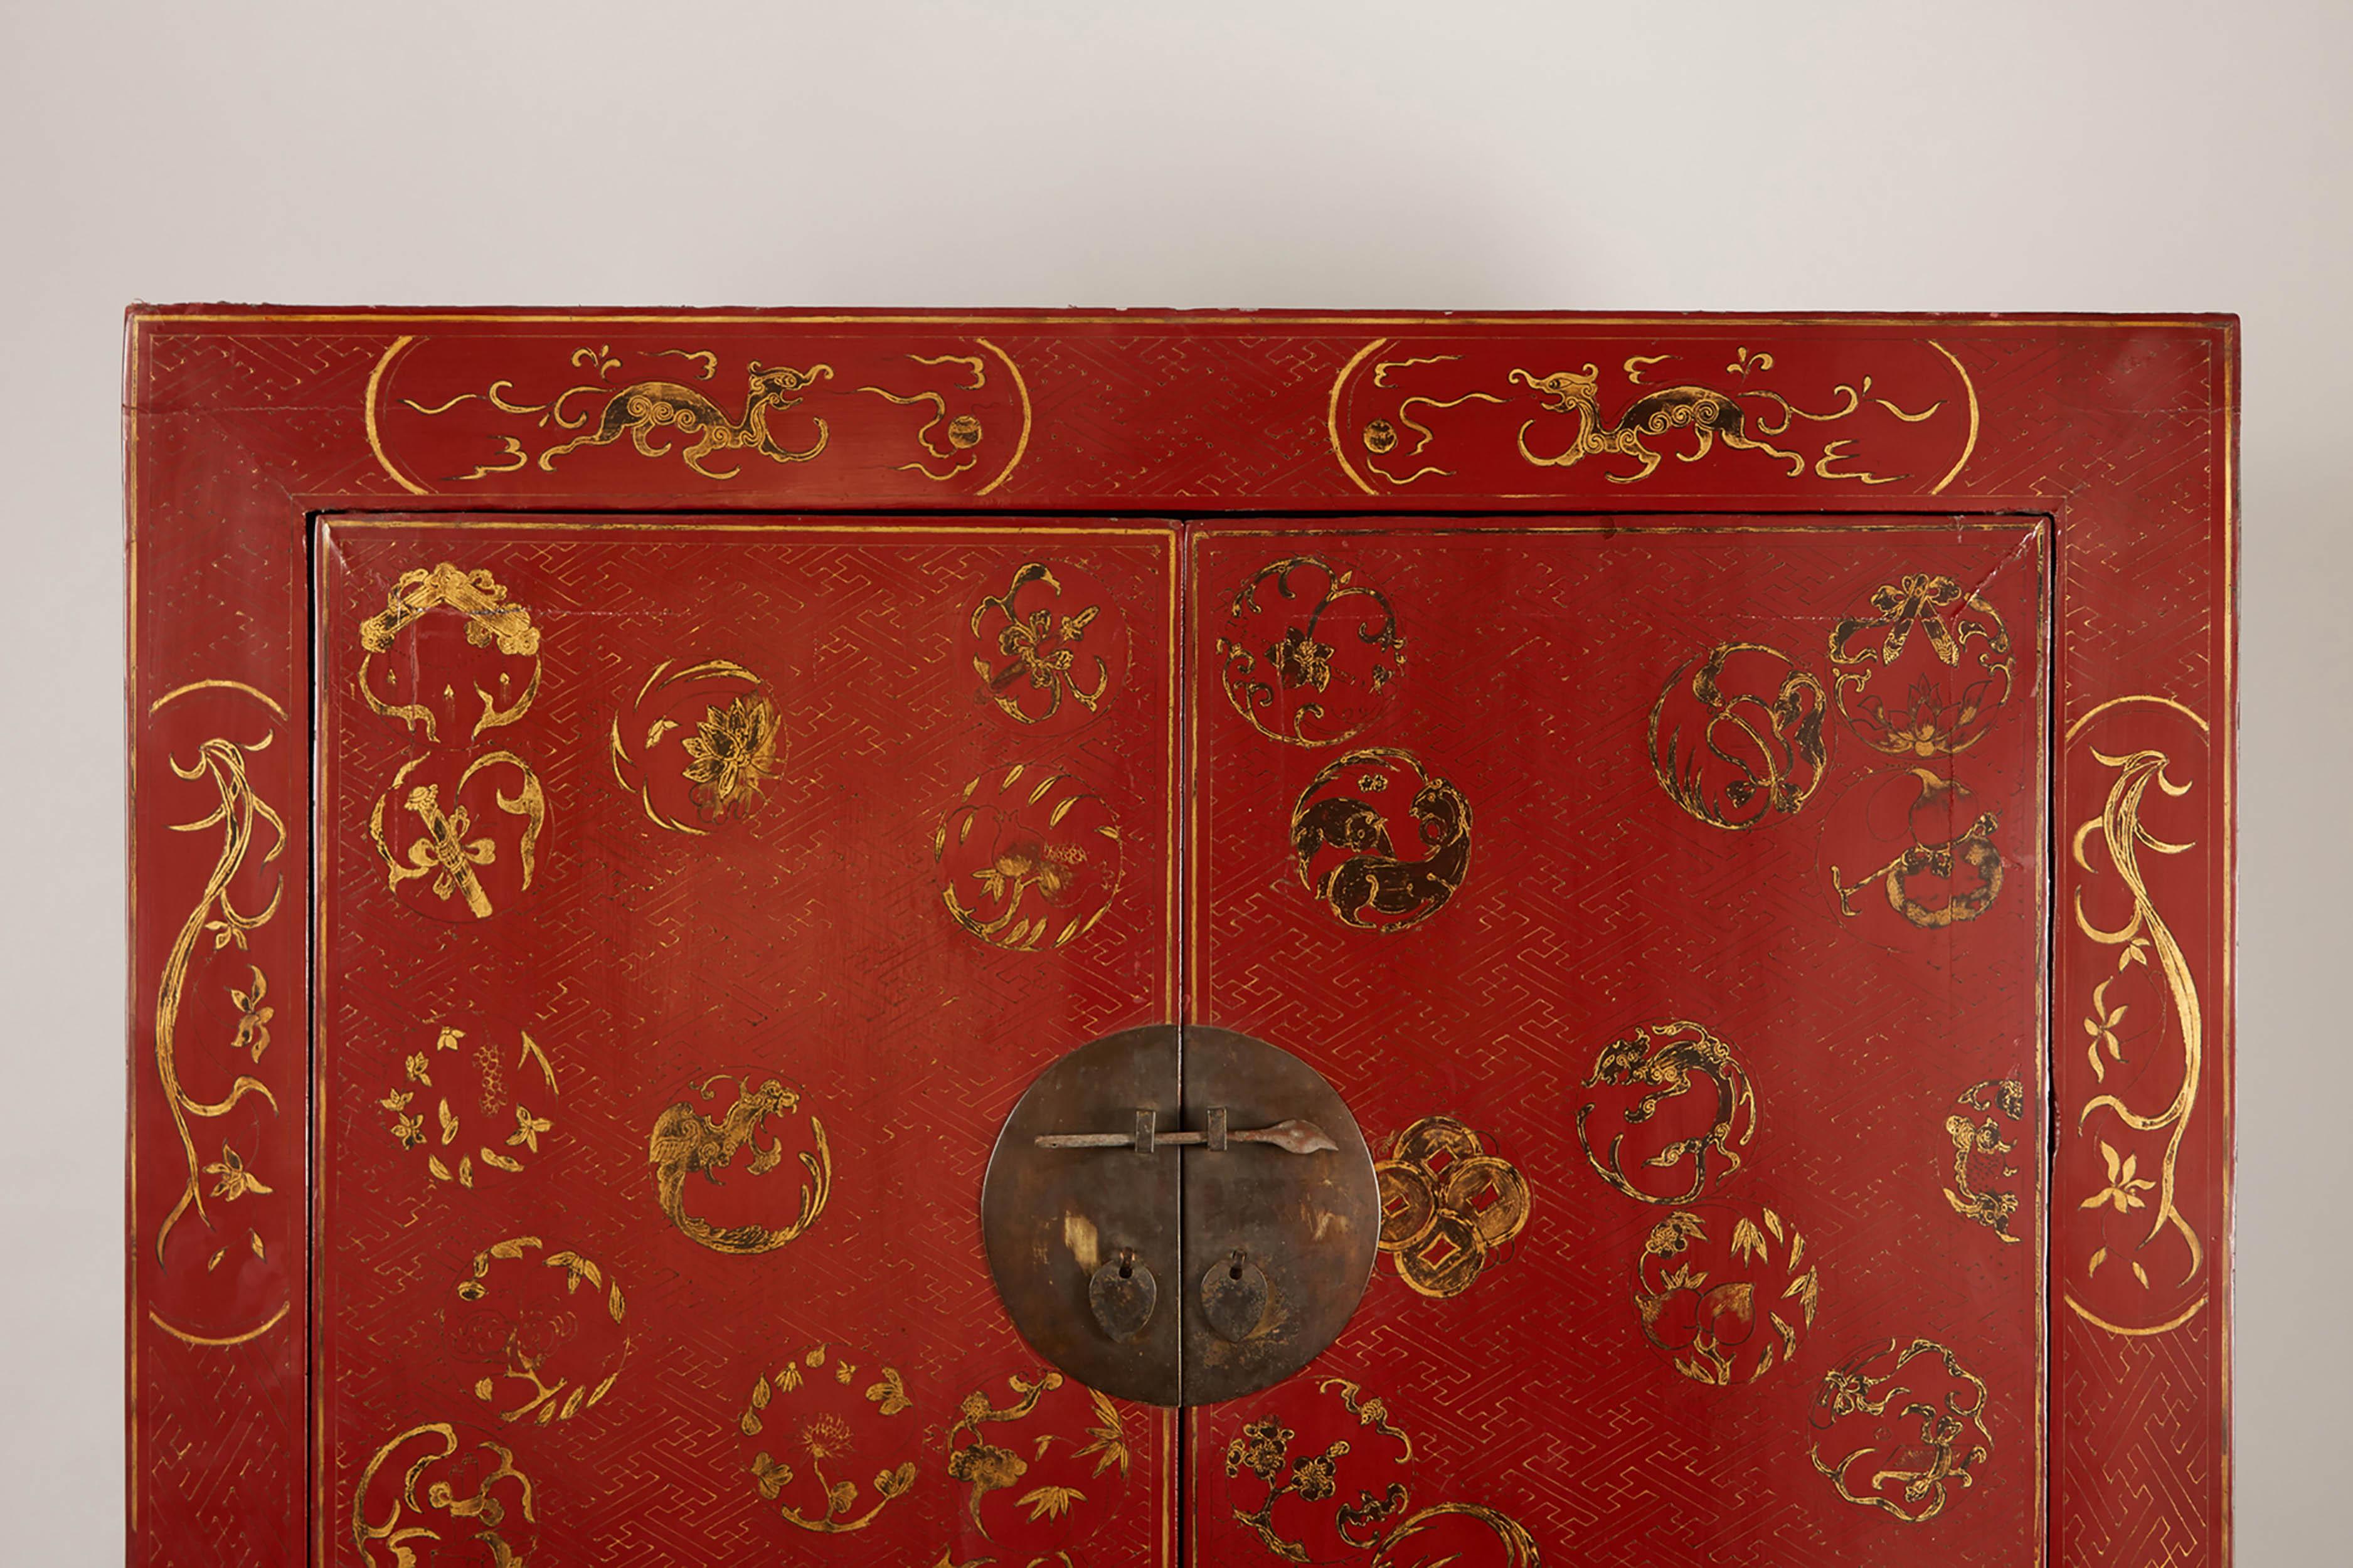 Dieser chinesische Schrank aus dem 19. Jahrhundert ist einfach gestaltet und verfügt über eine runde Frontplatte mit durchbrochenen Knäufen und Metallgriffen, eine Schürze und eine Zwickel mit Schürzenkopf. Der Schrank ist ganz in Rot gehalten und